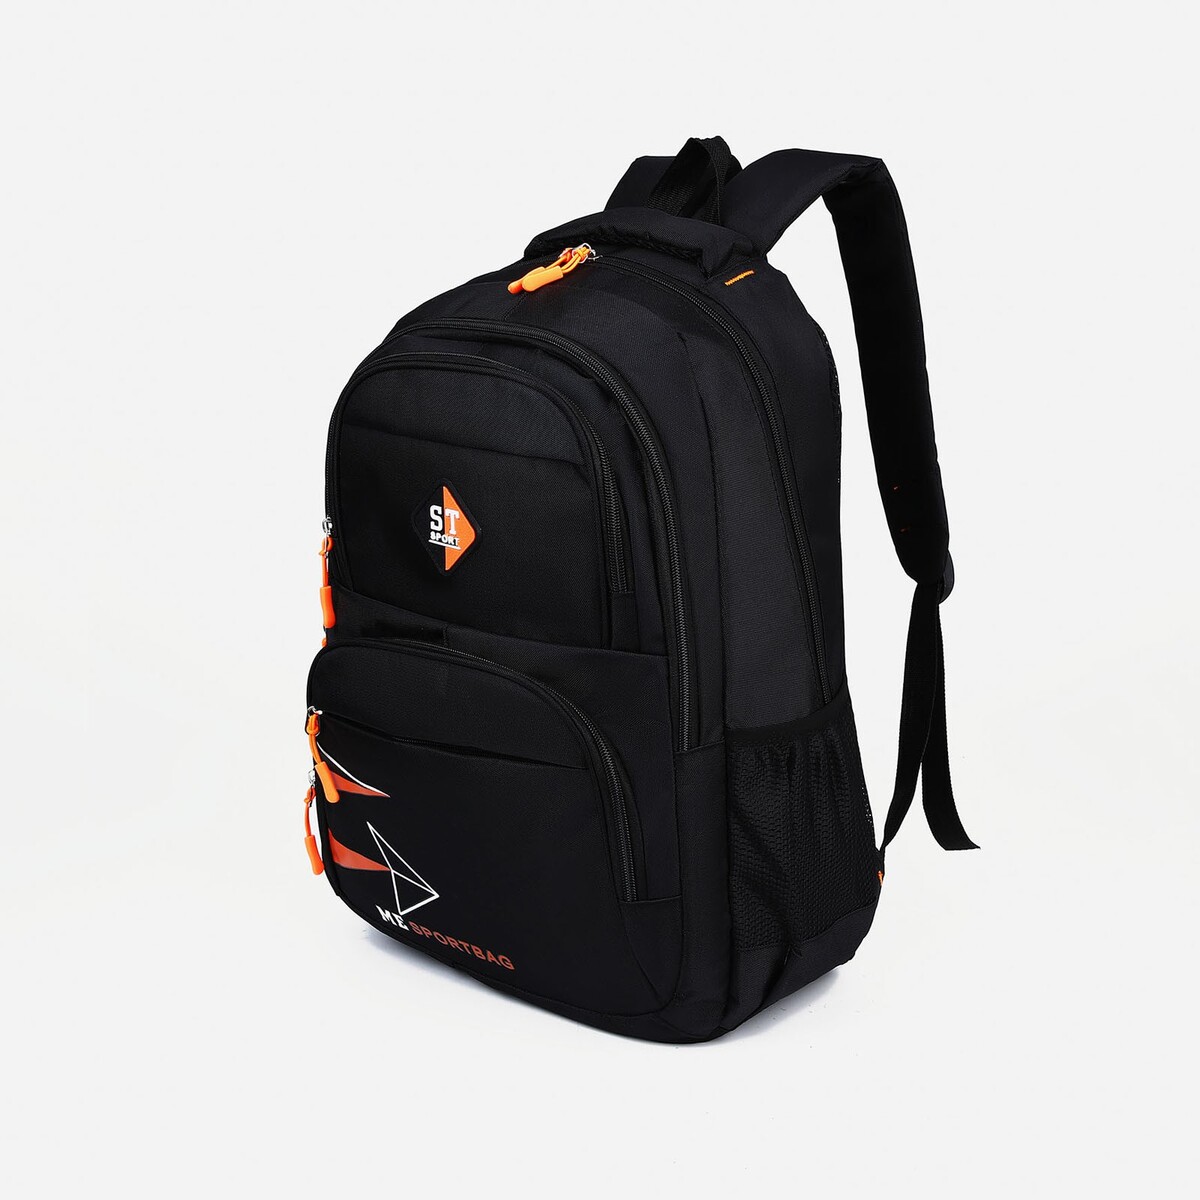 Рюкзак на молнии, 3 наружных кармана, цвет черный/оранжевый термосумка на молнии 5 8 л 2 наружных кармана оранжевый